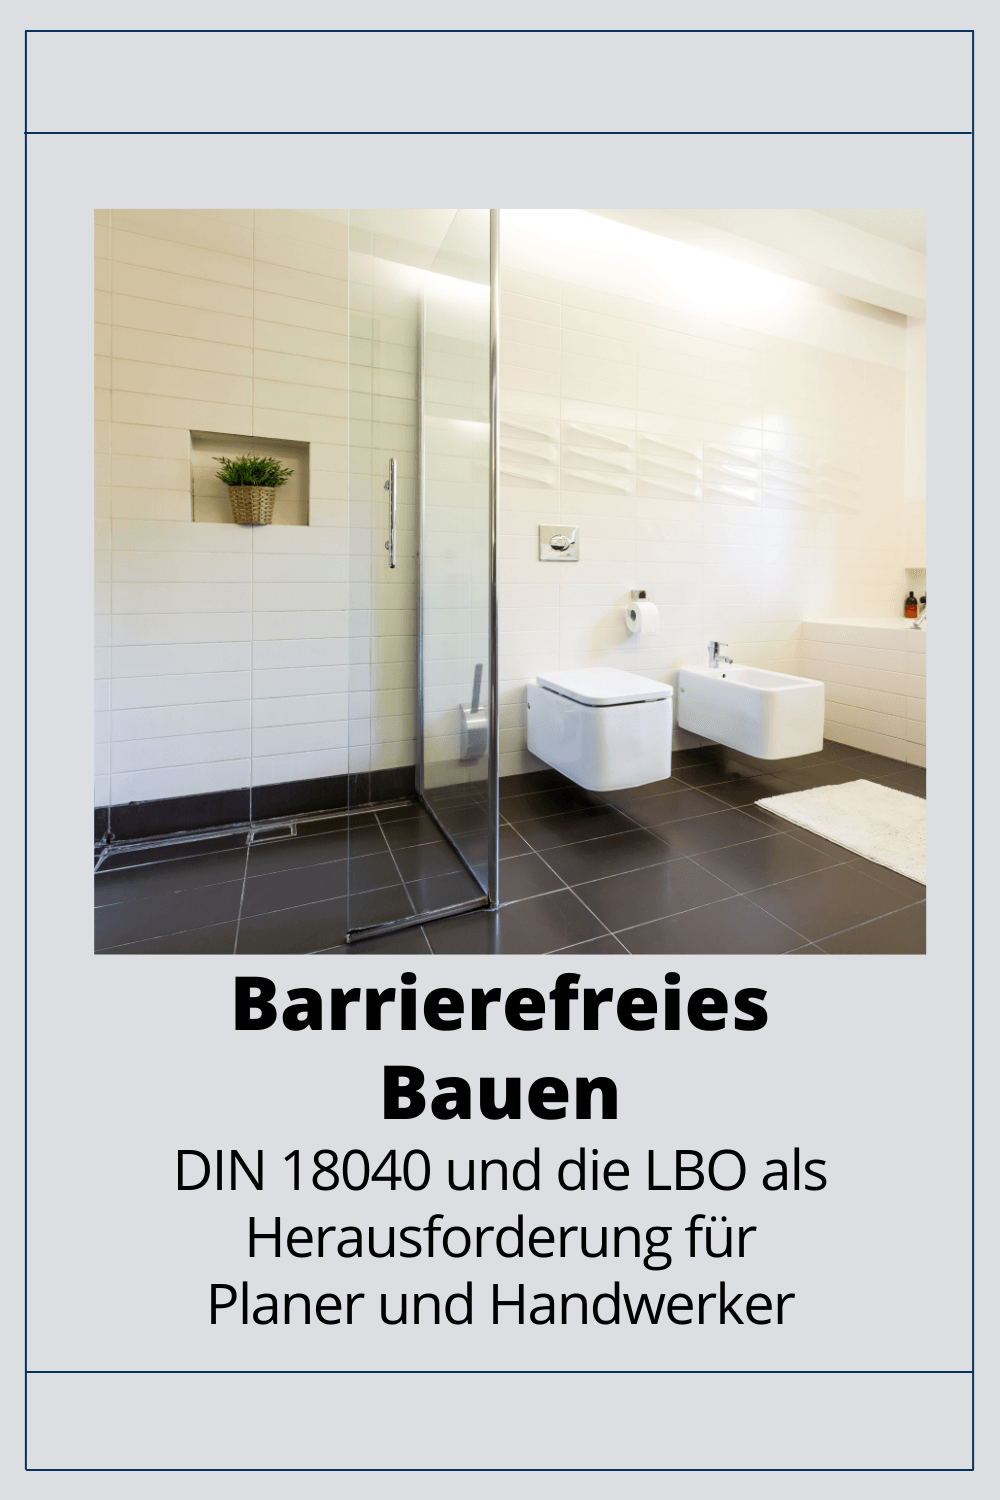 Barrierefreies Bauen DIN 18040 und LBO